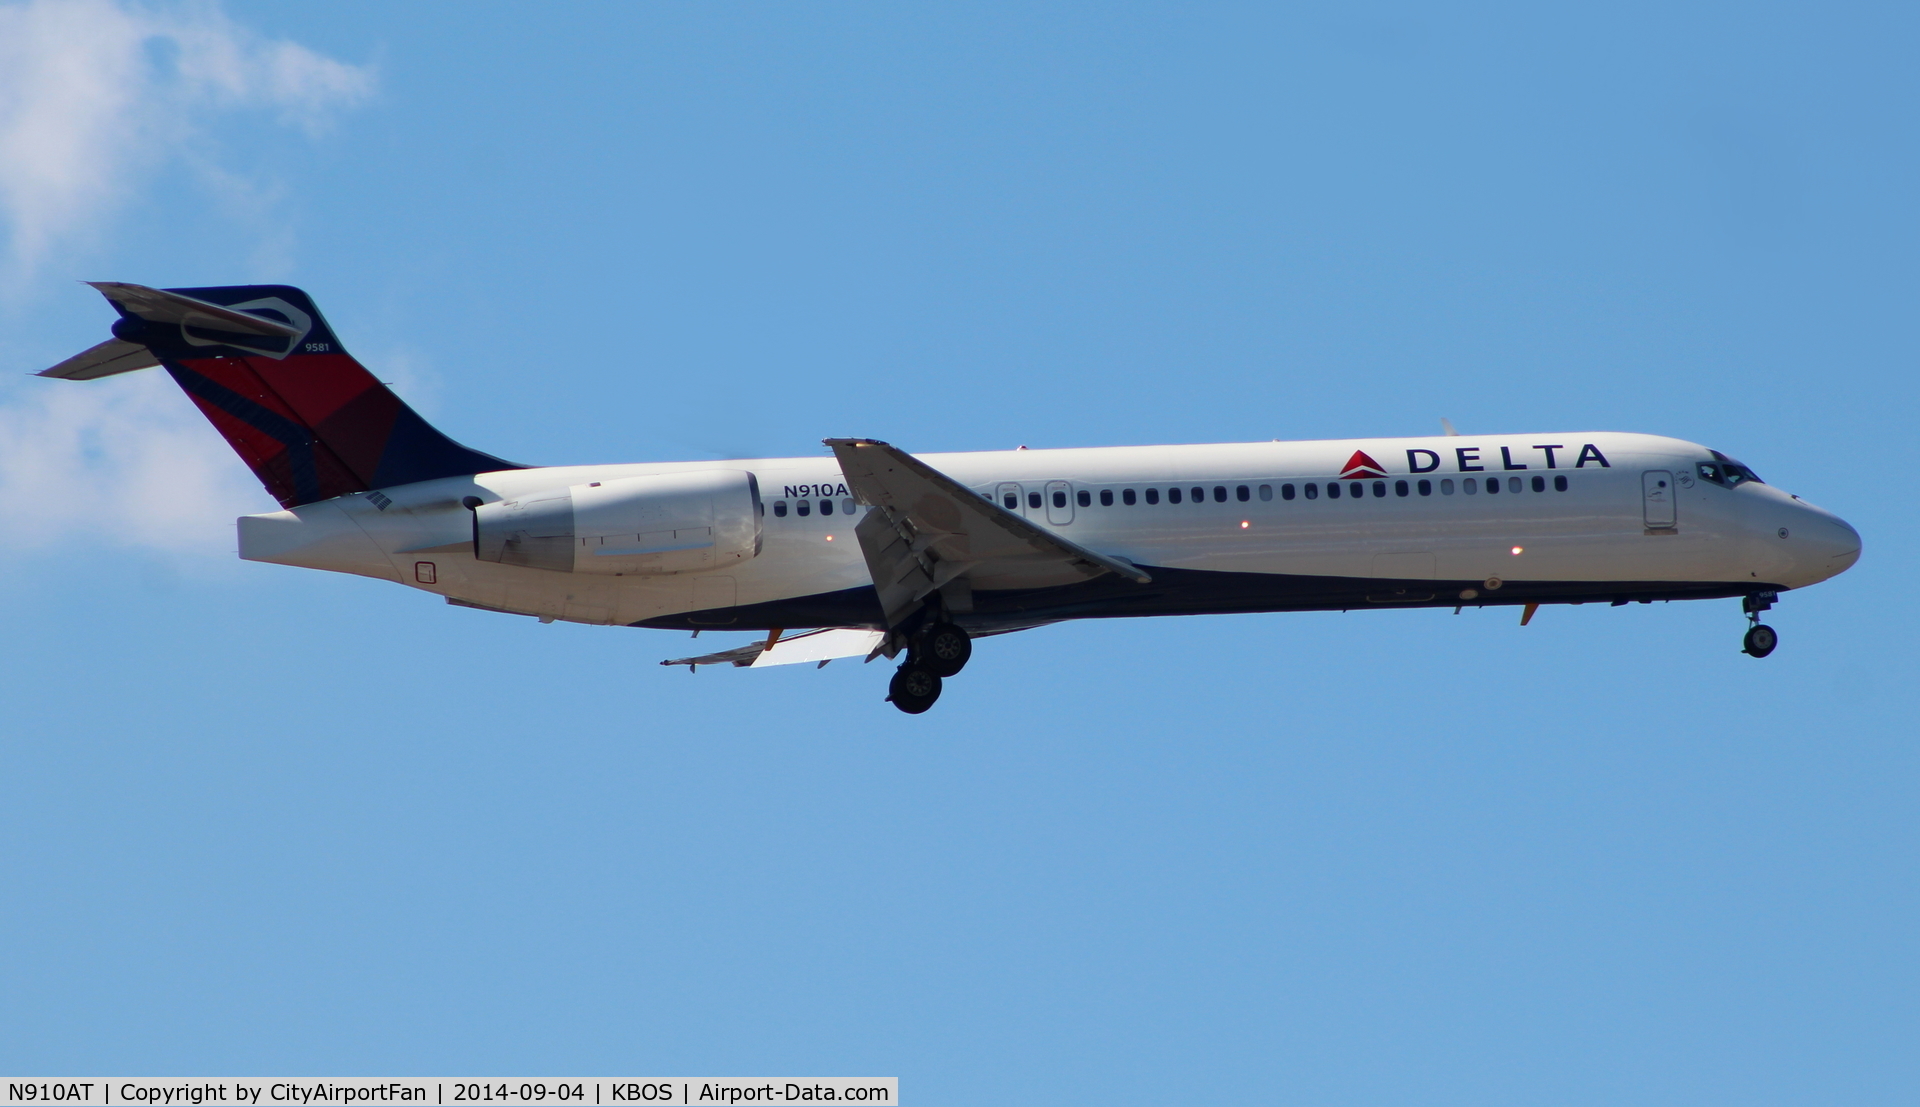 N910AT, 2001 Boeing 717-200 C/N 55086, Delta Airlines (DAL/DL)